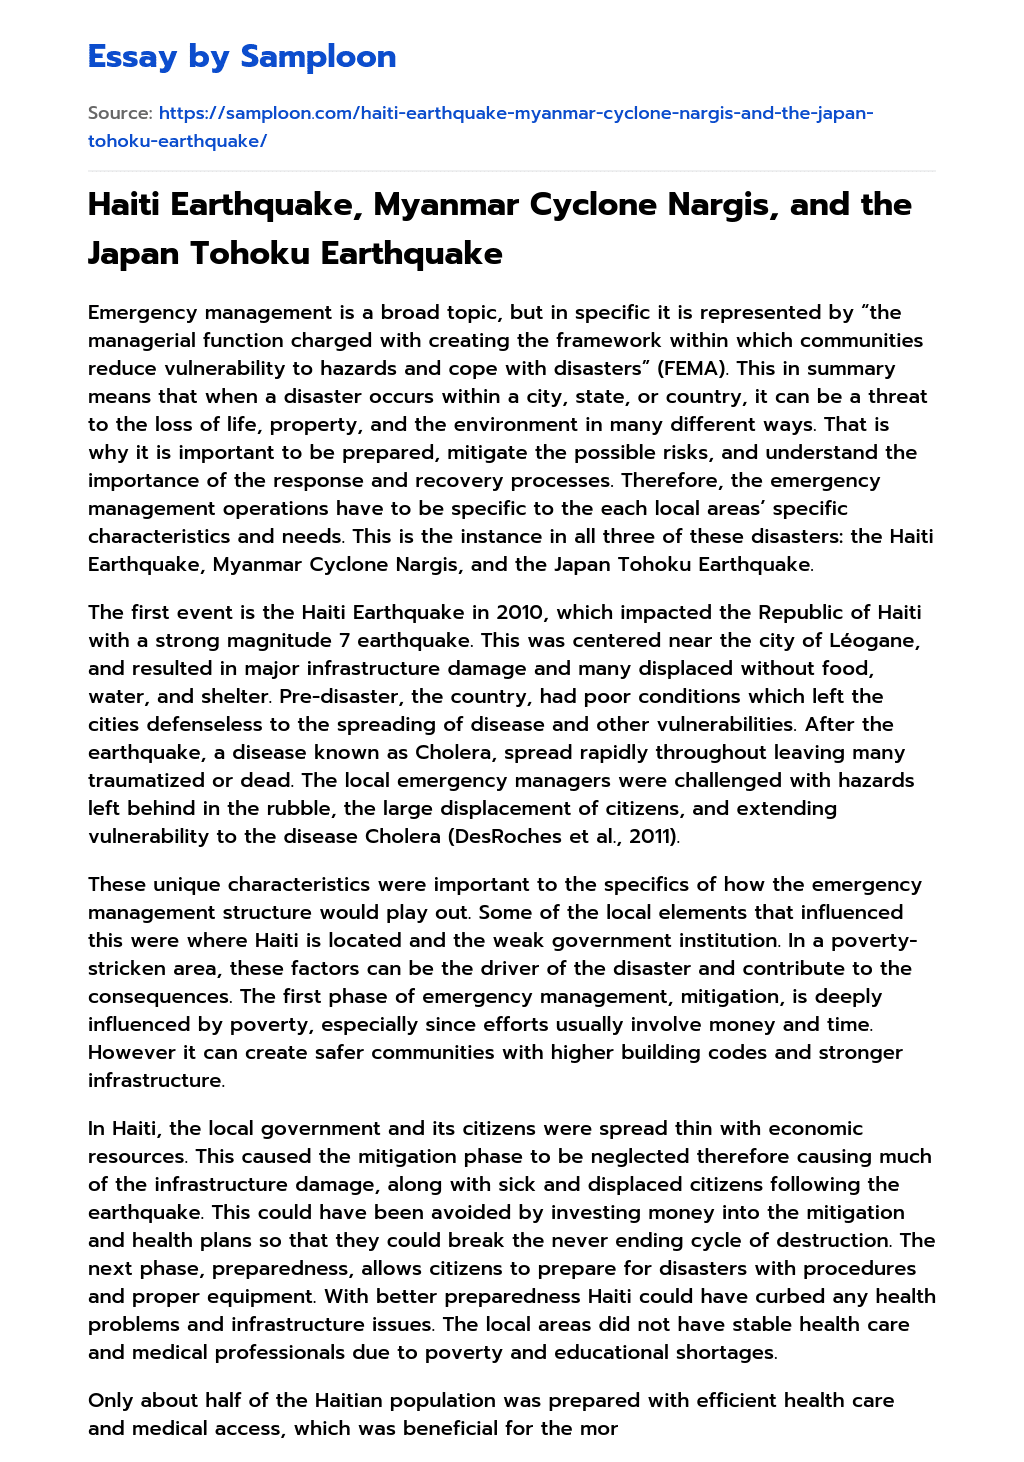 Haiti Earthquake, Myanmar Cyclone Nargis, and the Japan Tohoku Earthquake essay